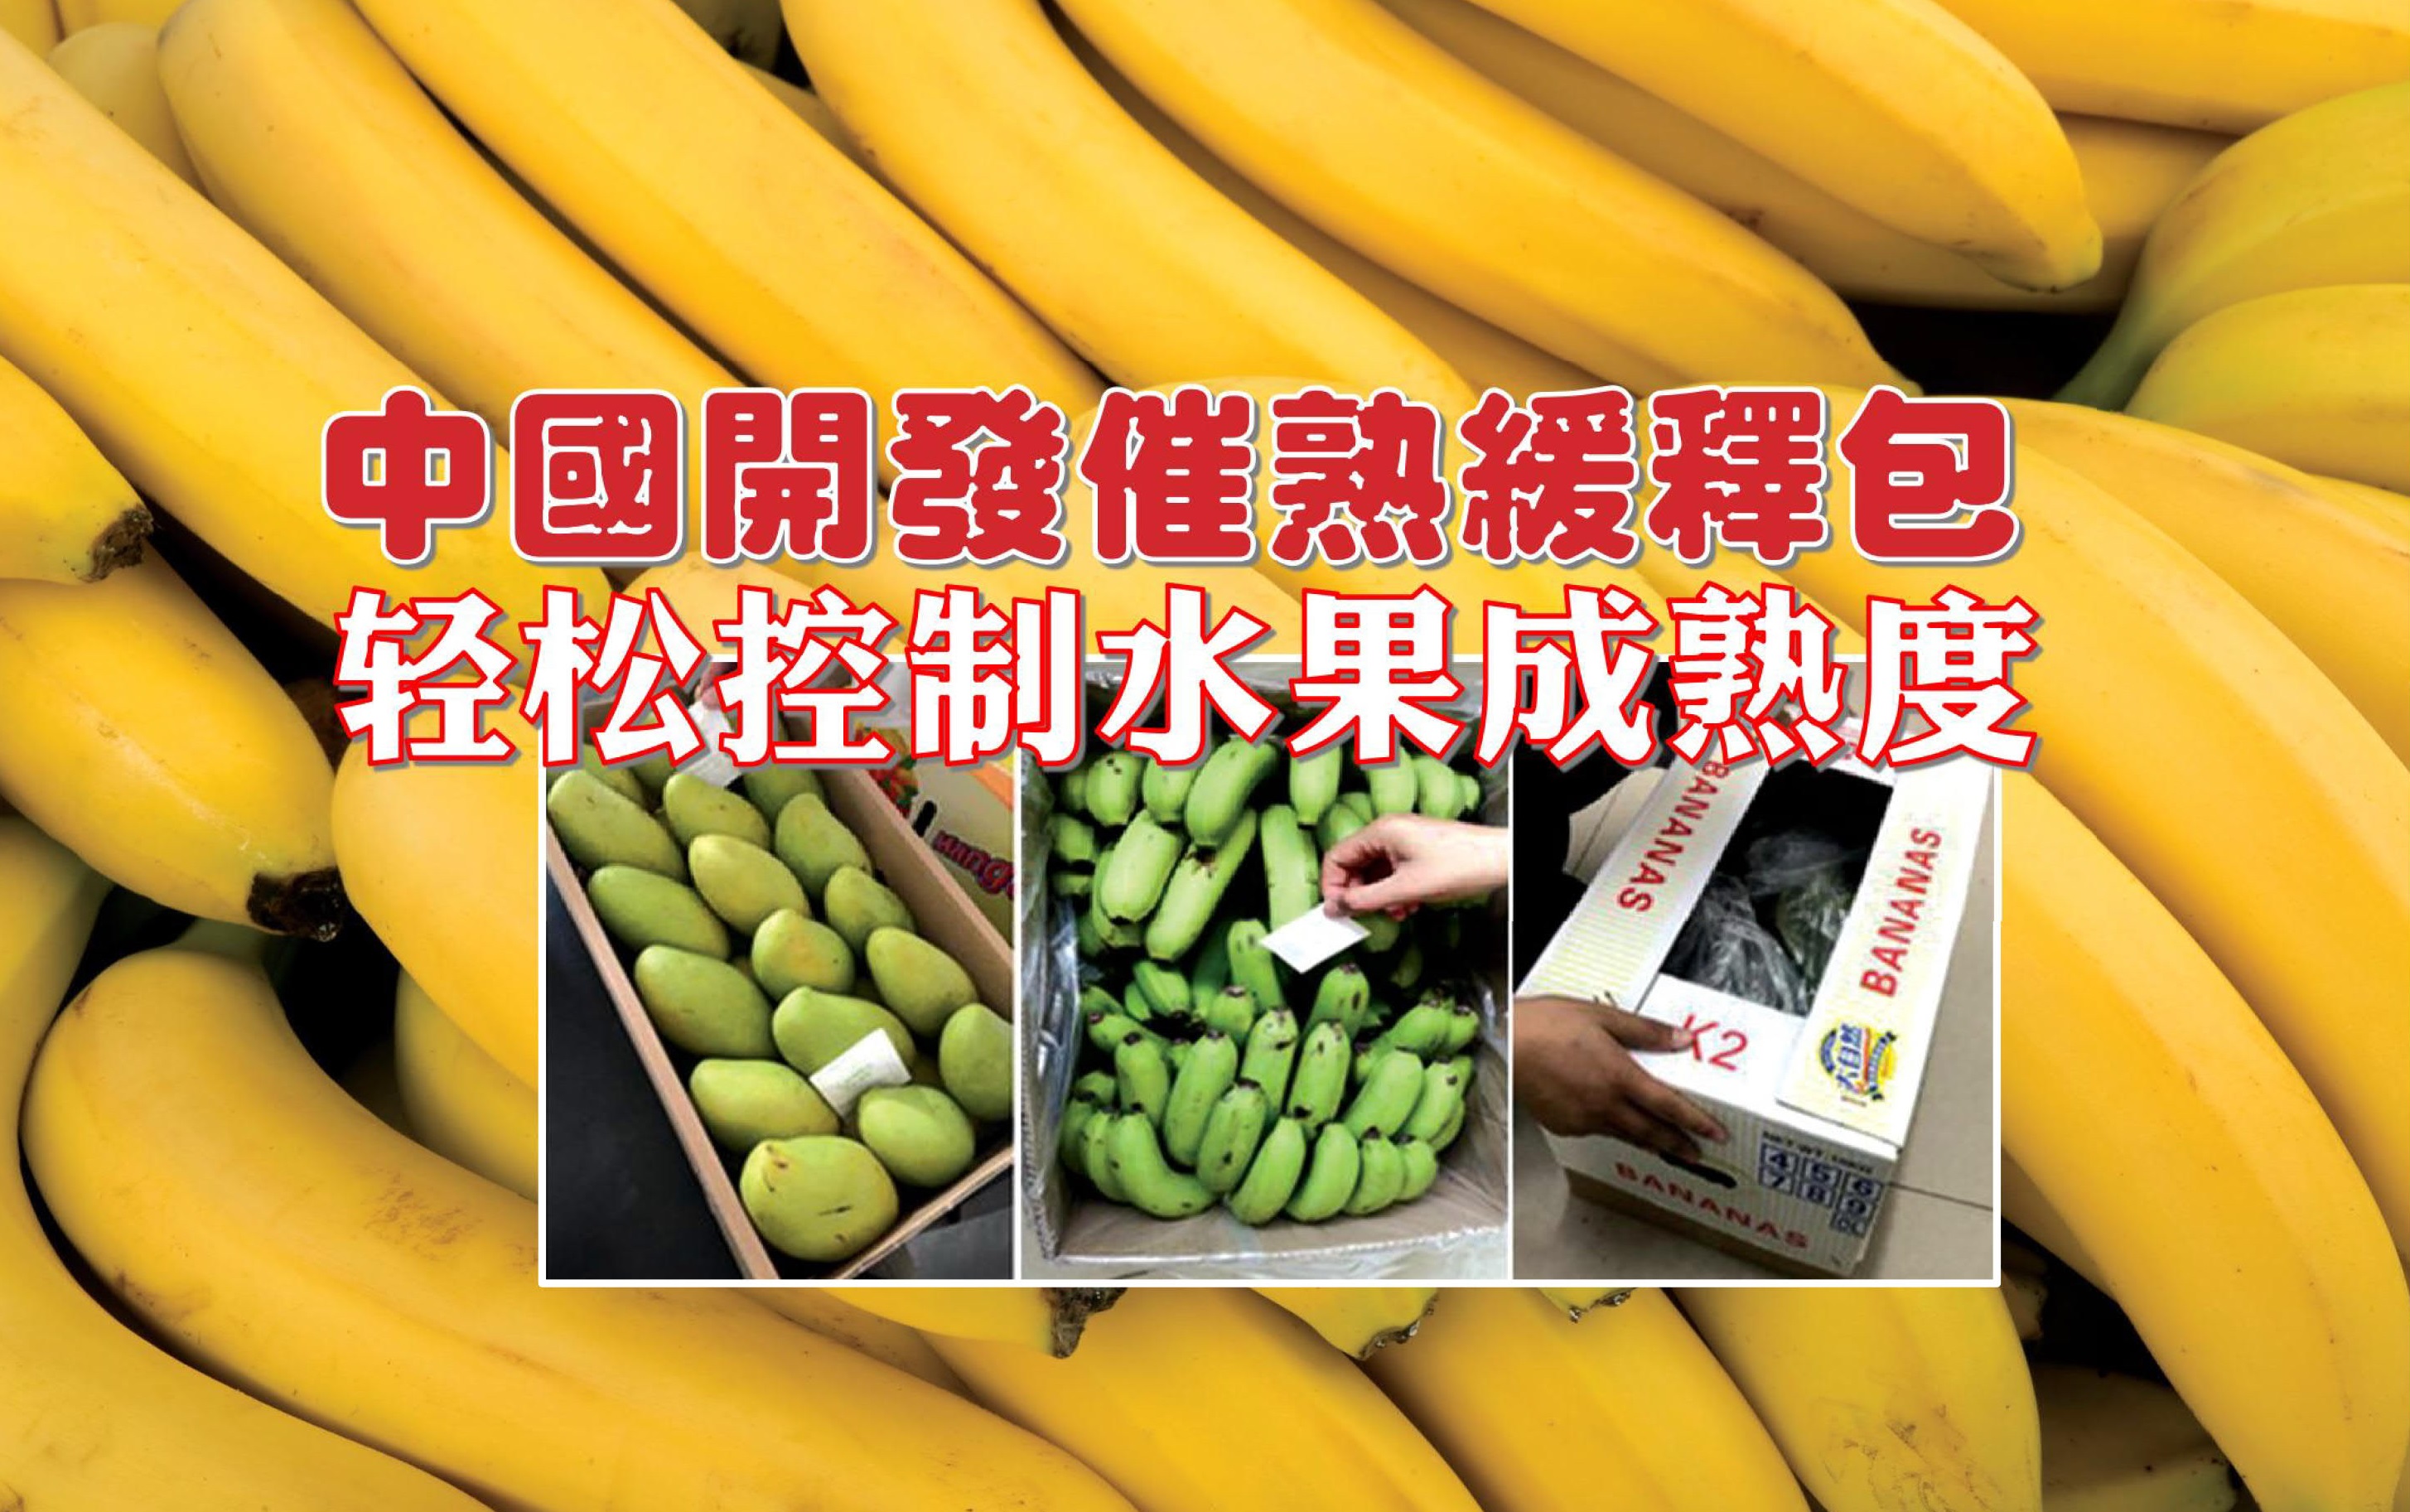 中国开发催熟缓释包 轻松控制水果成熟度 - 农牧世界